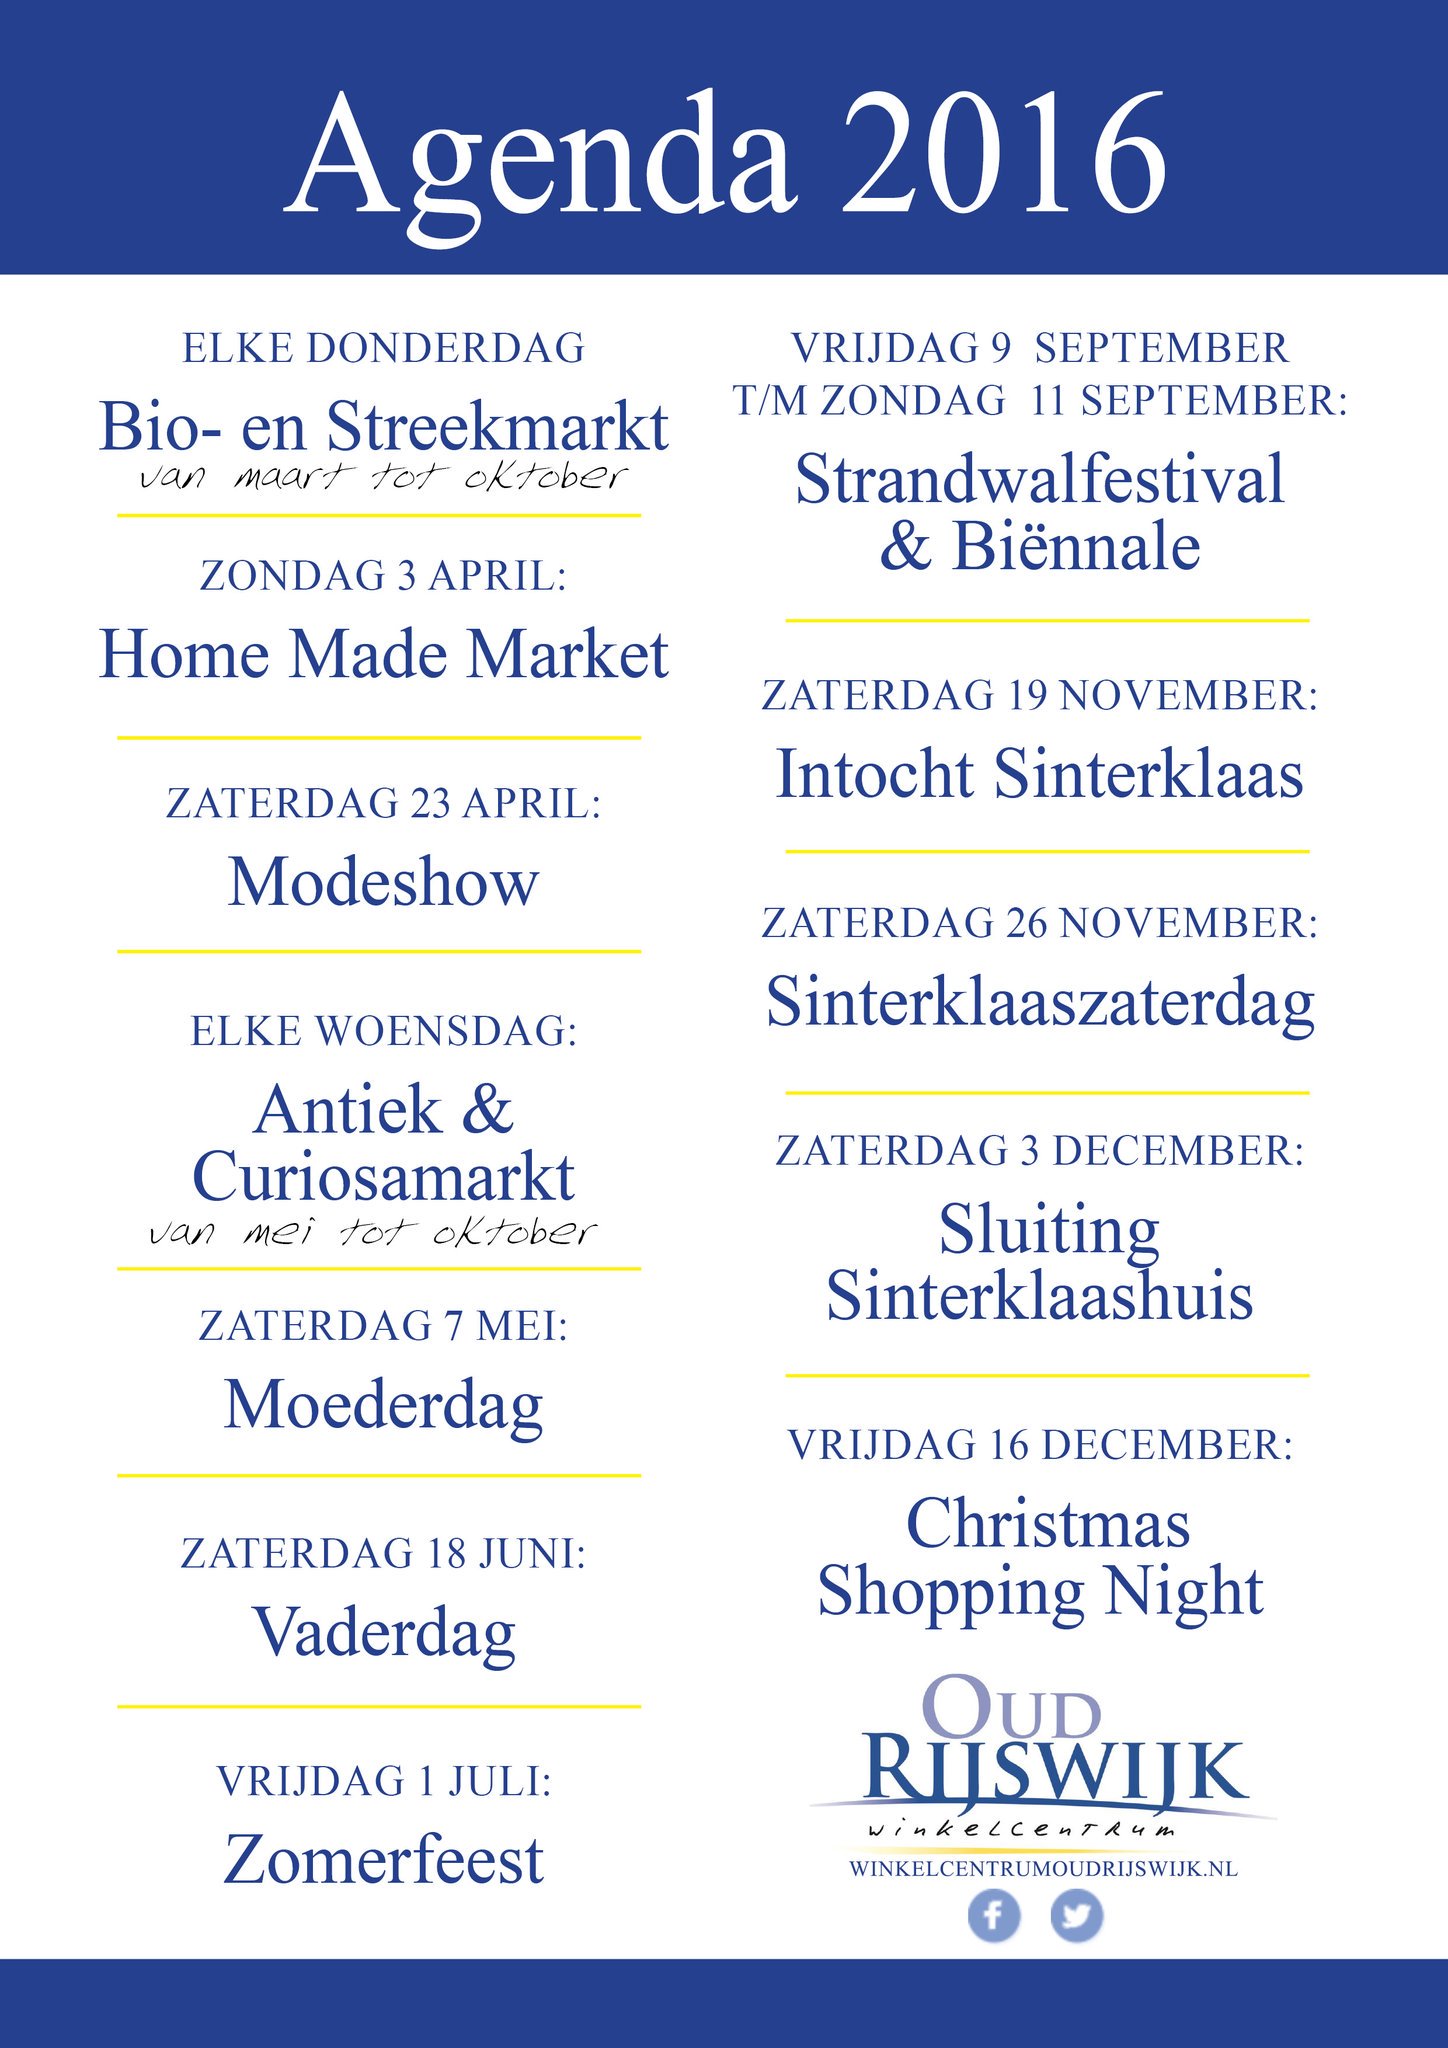 Nieuwjaar beweging drijvend Restaurant De Wits on Twitter: "Ter info @OudRijswijkWC #agendapuntje  https://t.co/7QooeHU8n4" / Twitter